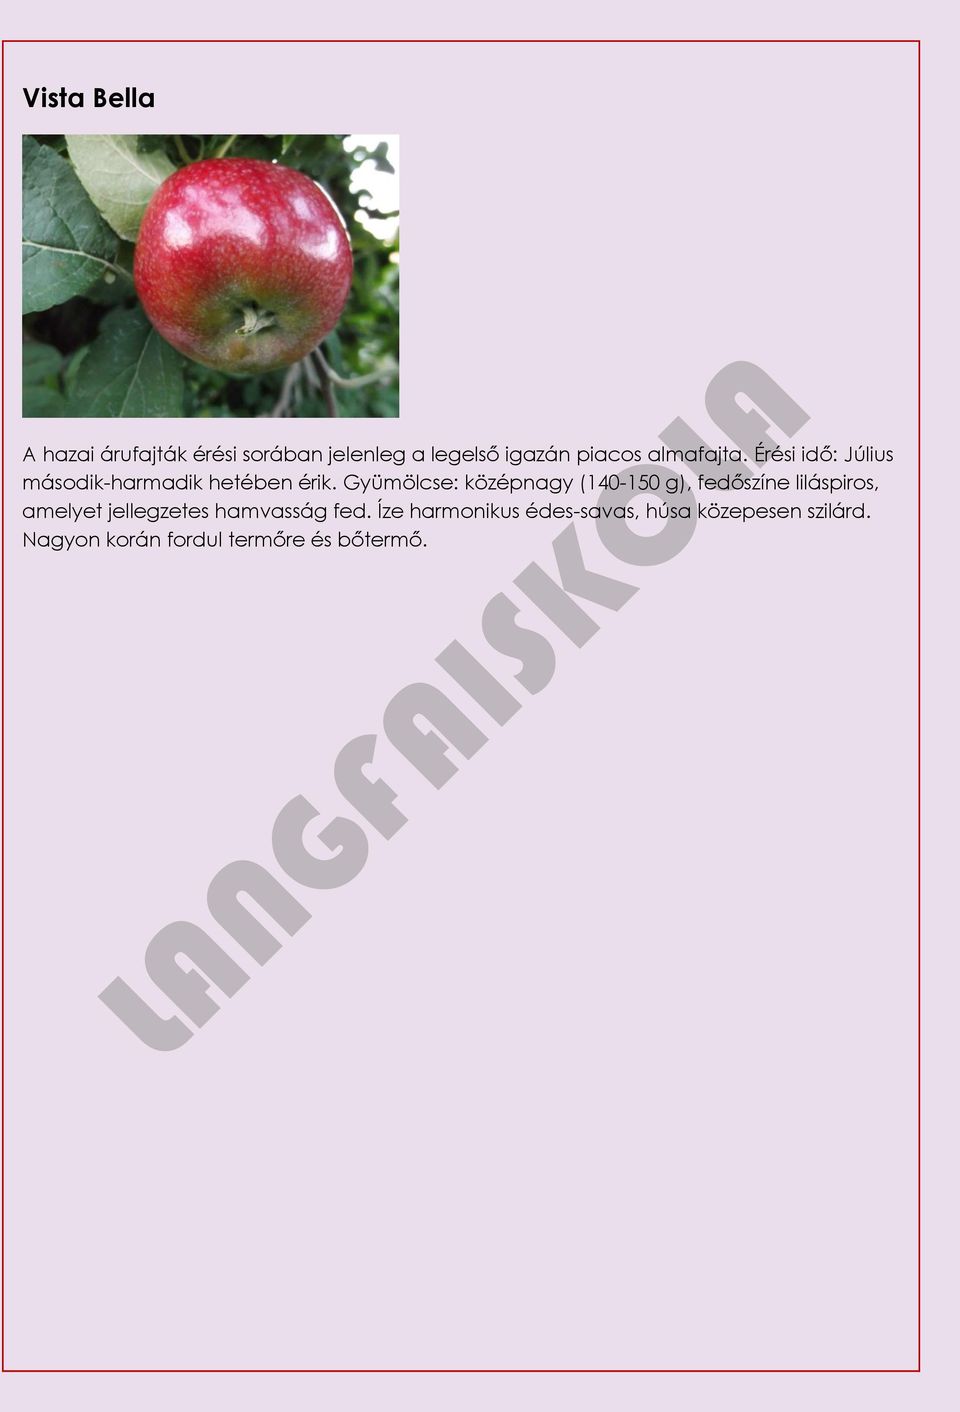 Gyümölcse: középnagy (140-150 g), fedőszíne liláspiros, amelyet jellegzetes